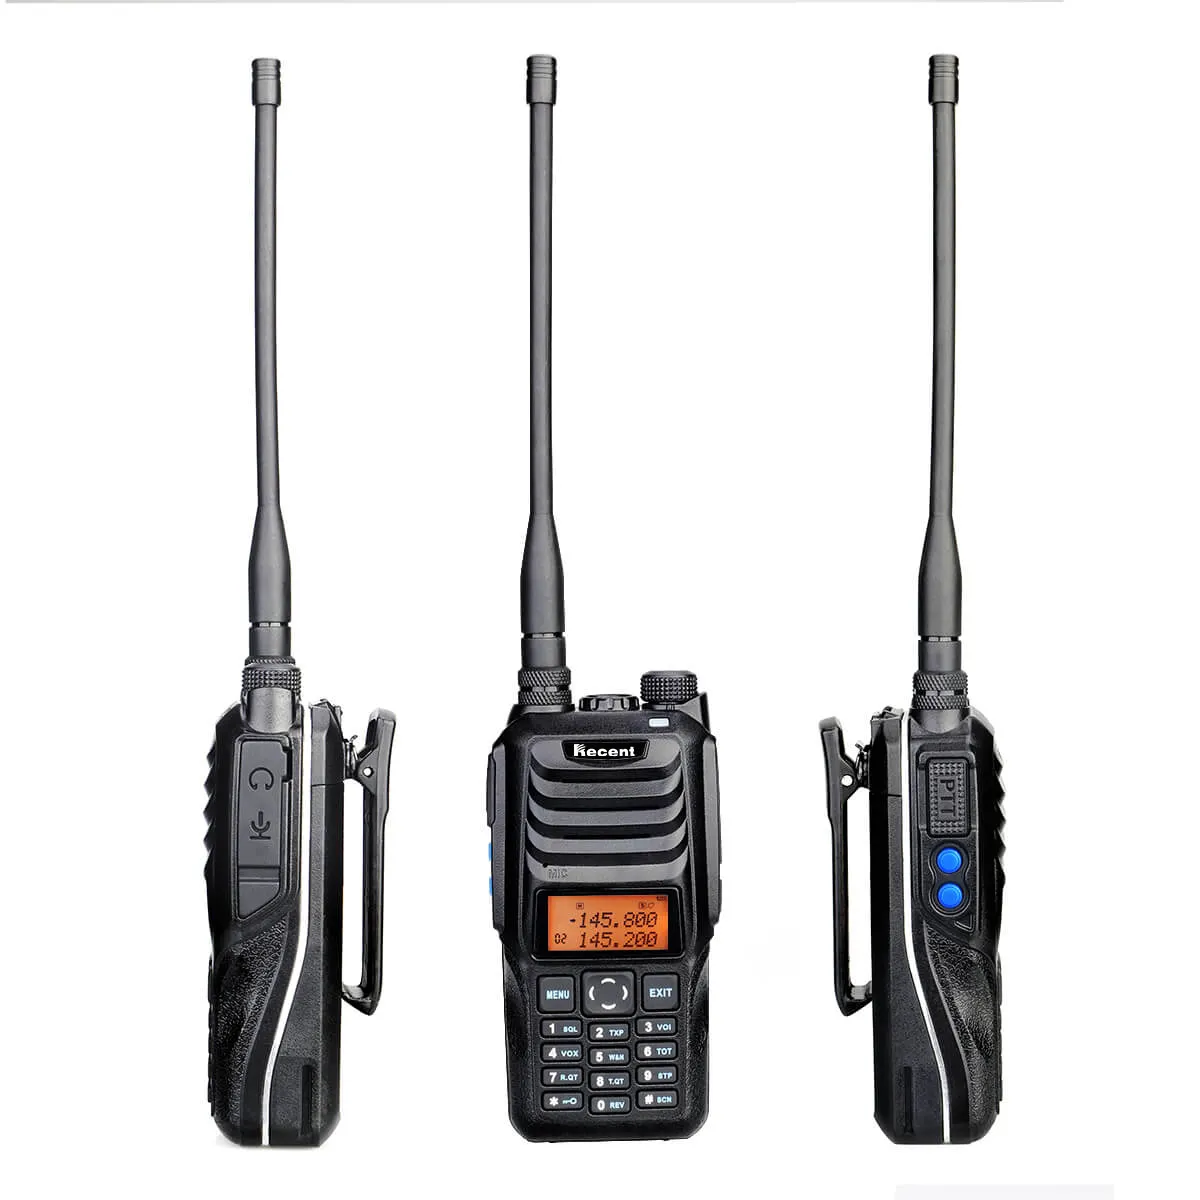 RS-589 récent Talkie-walkie à main radio bidirectionnelle double bande analogique radio amateur 10W interphone haute puissance avec lampe de poche